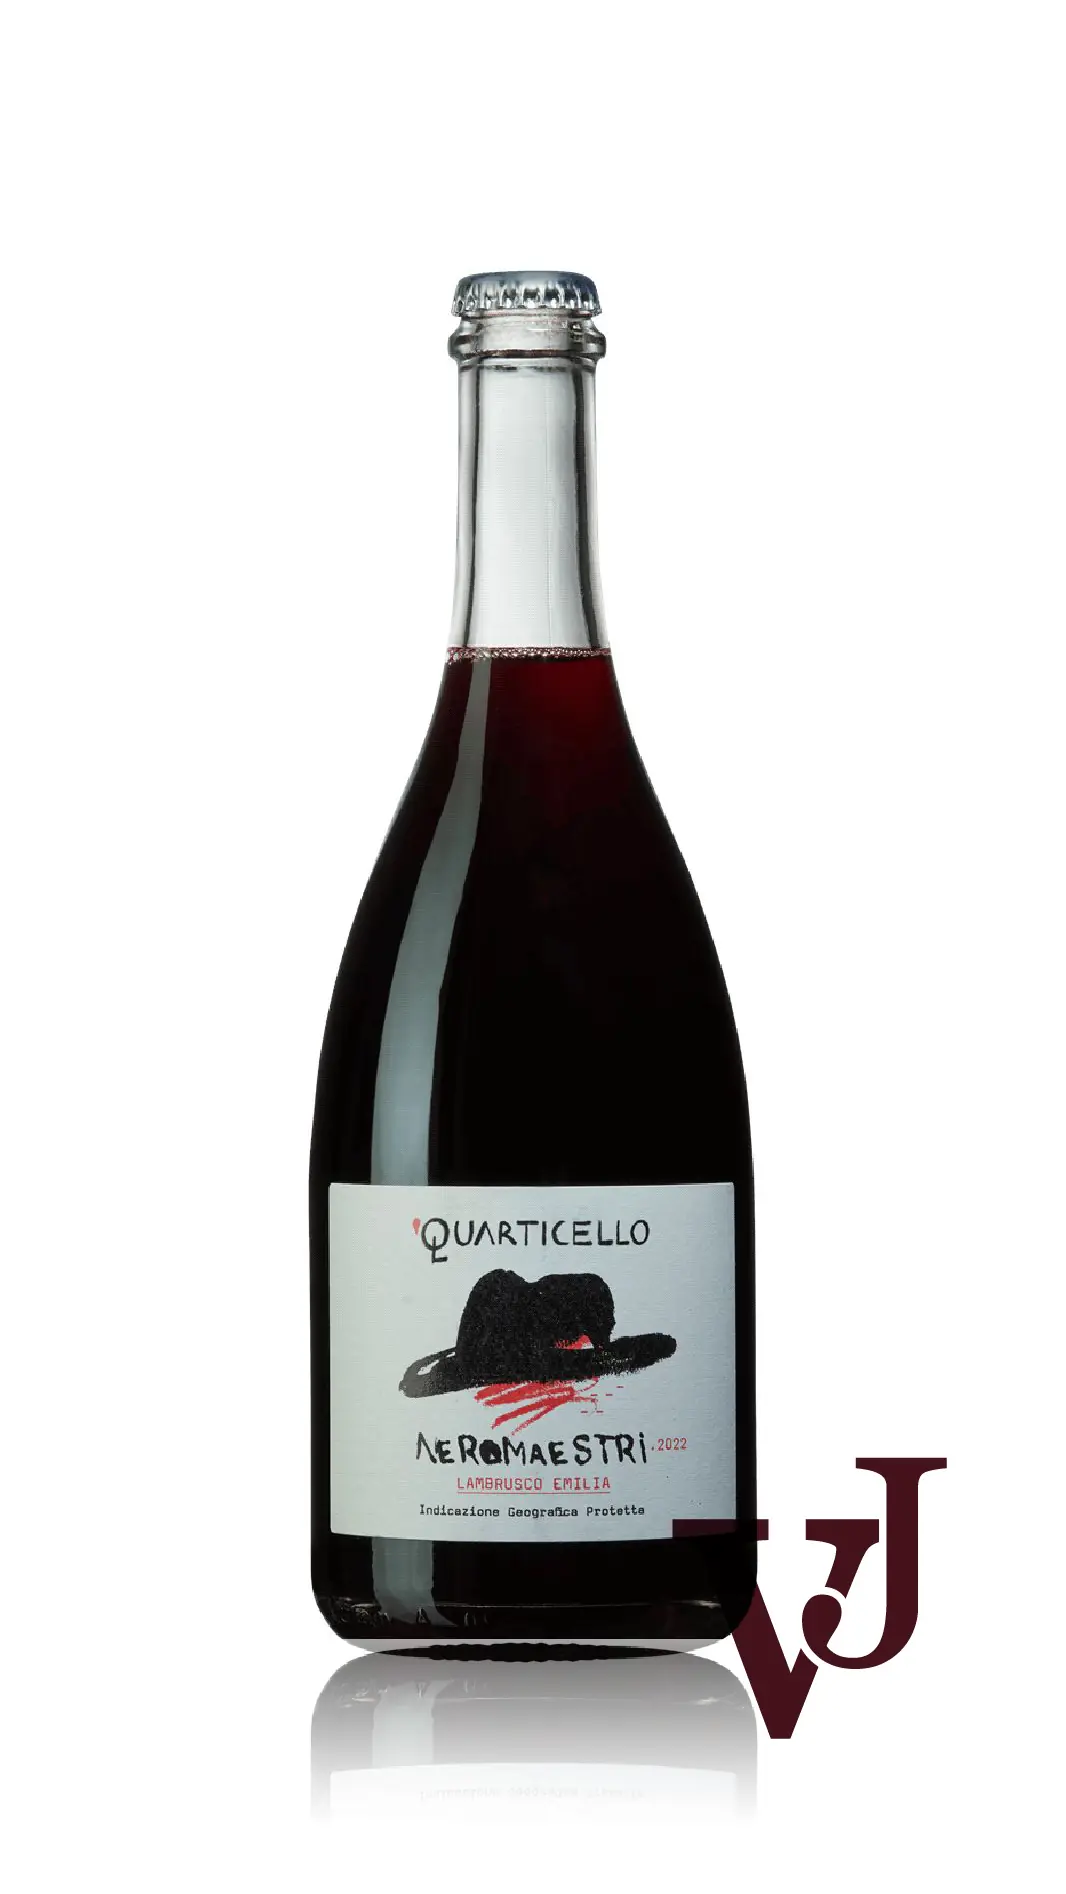 Rött Vin - Neromaestri Lambrusco 2022 artikel nummer 9364901 från producenten Quarticello från Italien - Vinjournalen.se